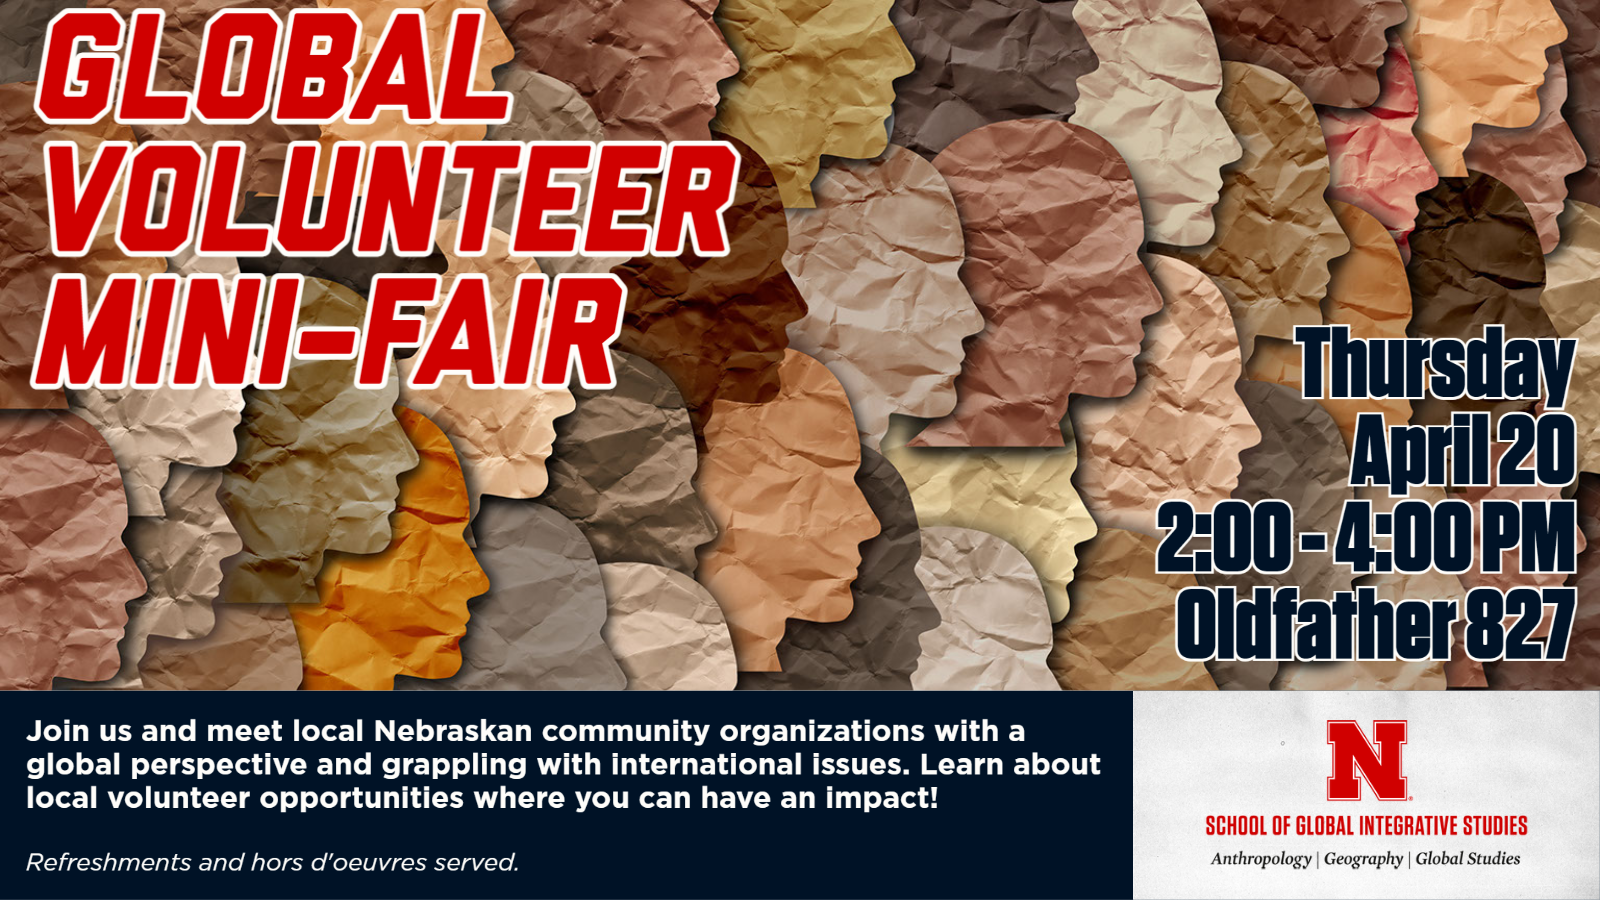 Global Volunteer Mini-Fair 4/20 at 2PM